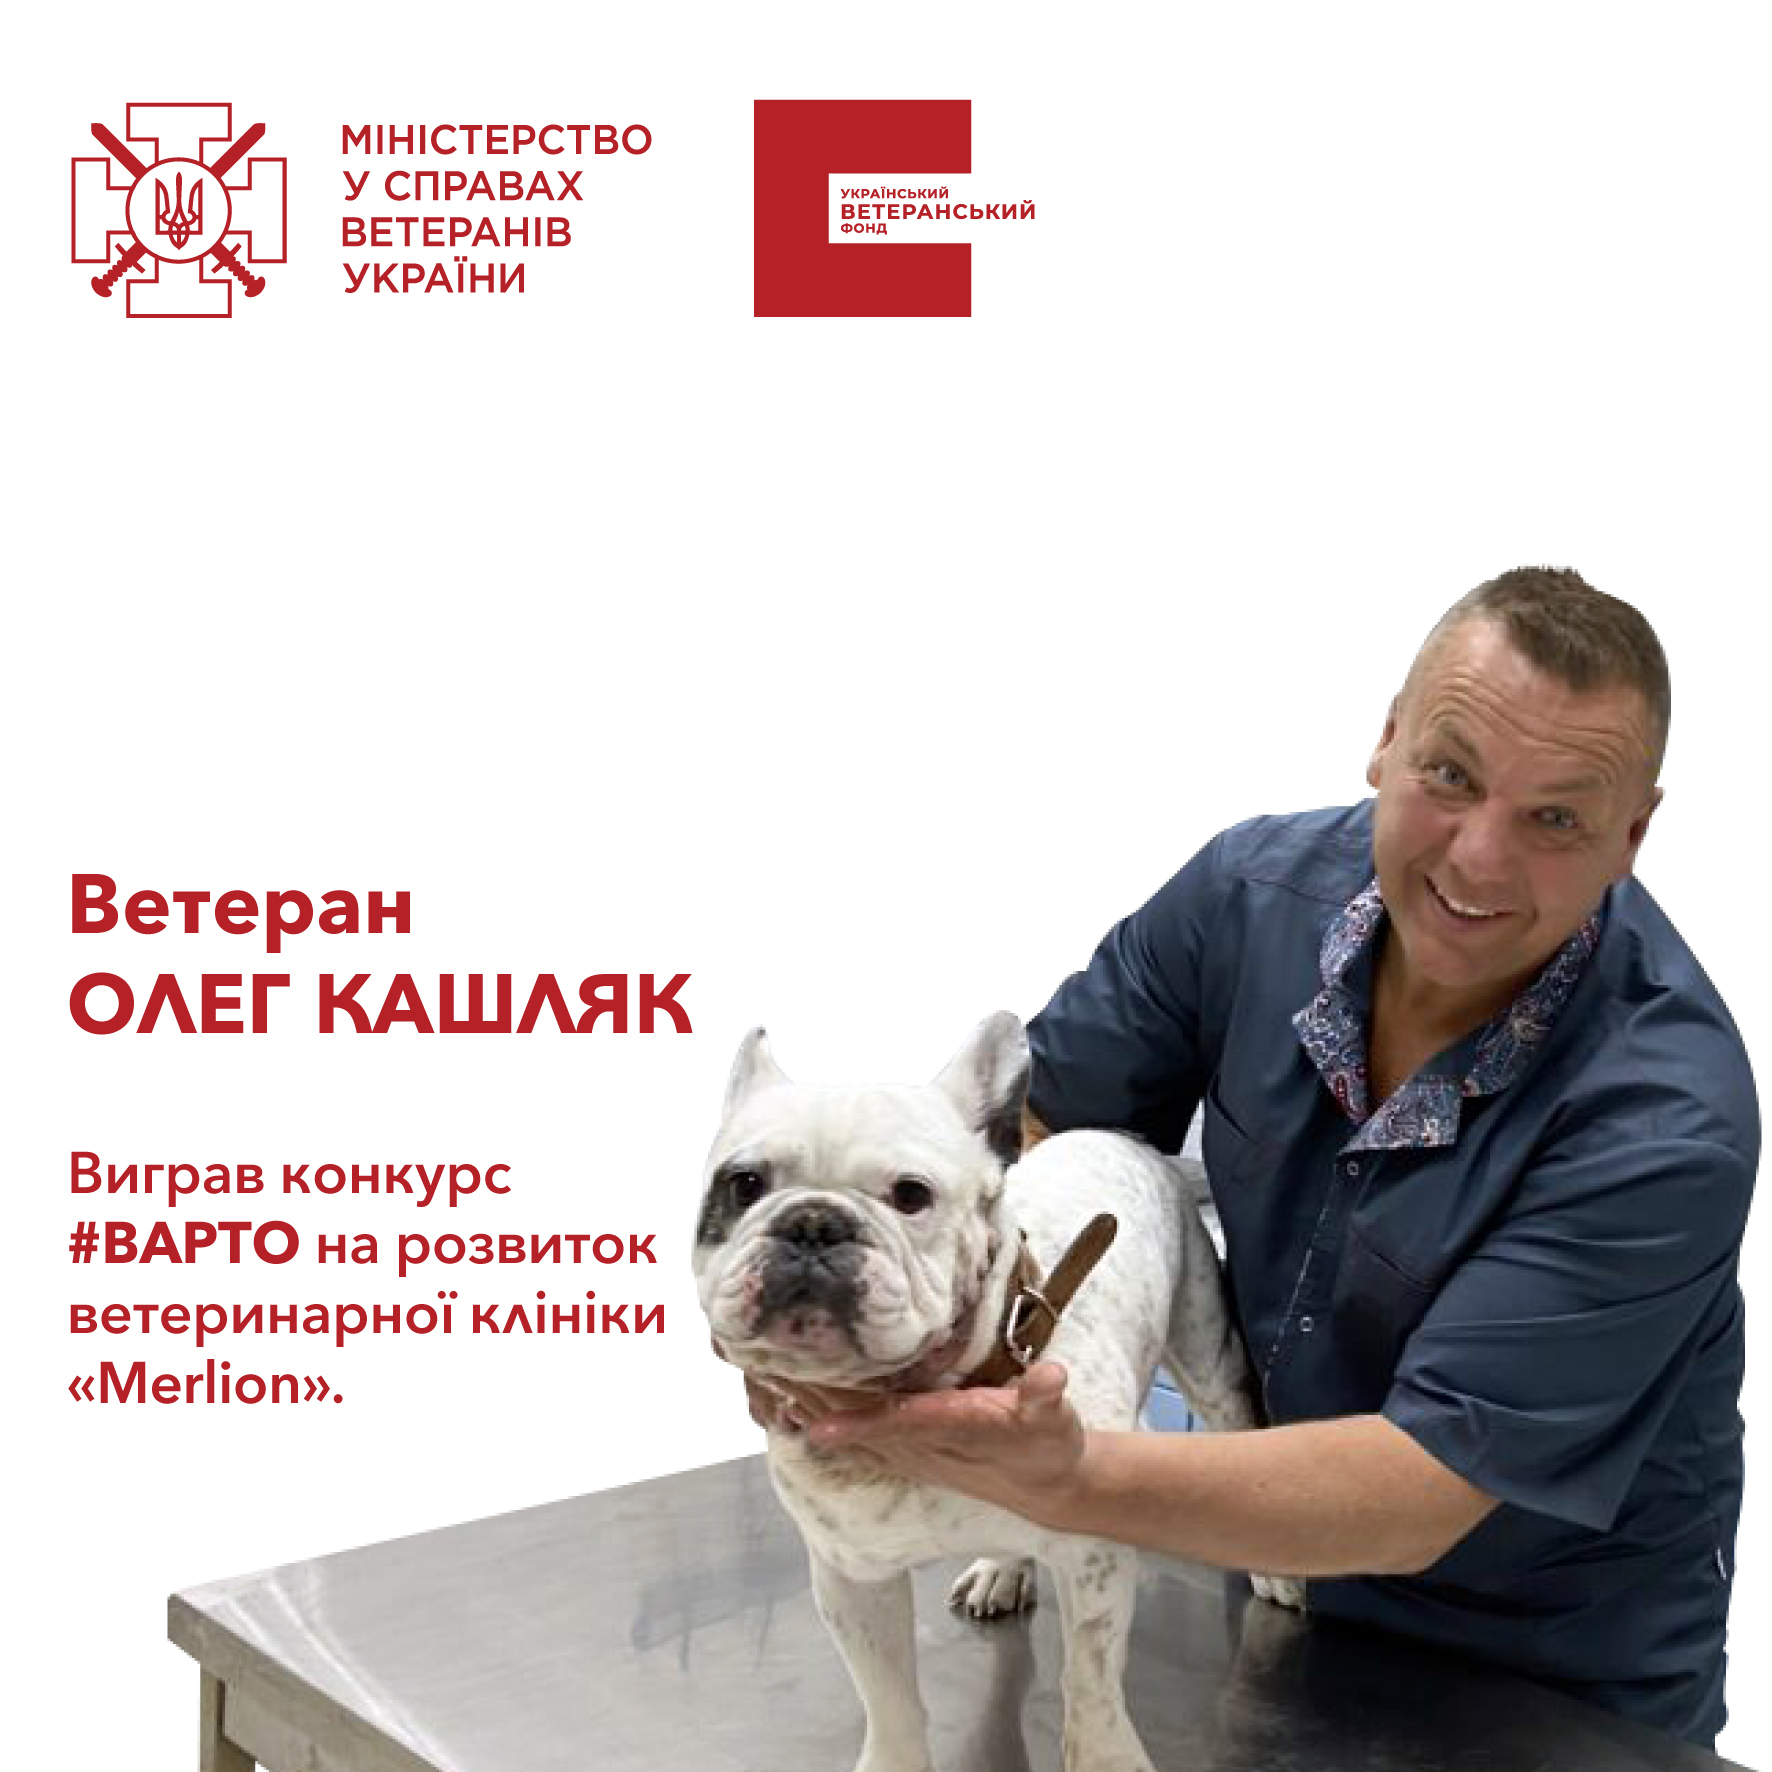 Ветеран Олег Кашляк ростить і розвиває ветеринарну клініку Merlion у Львові